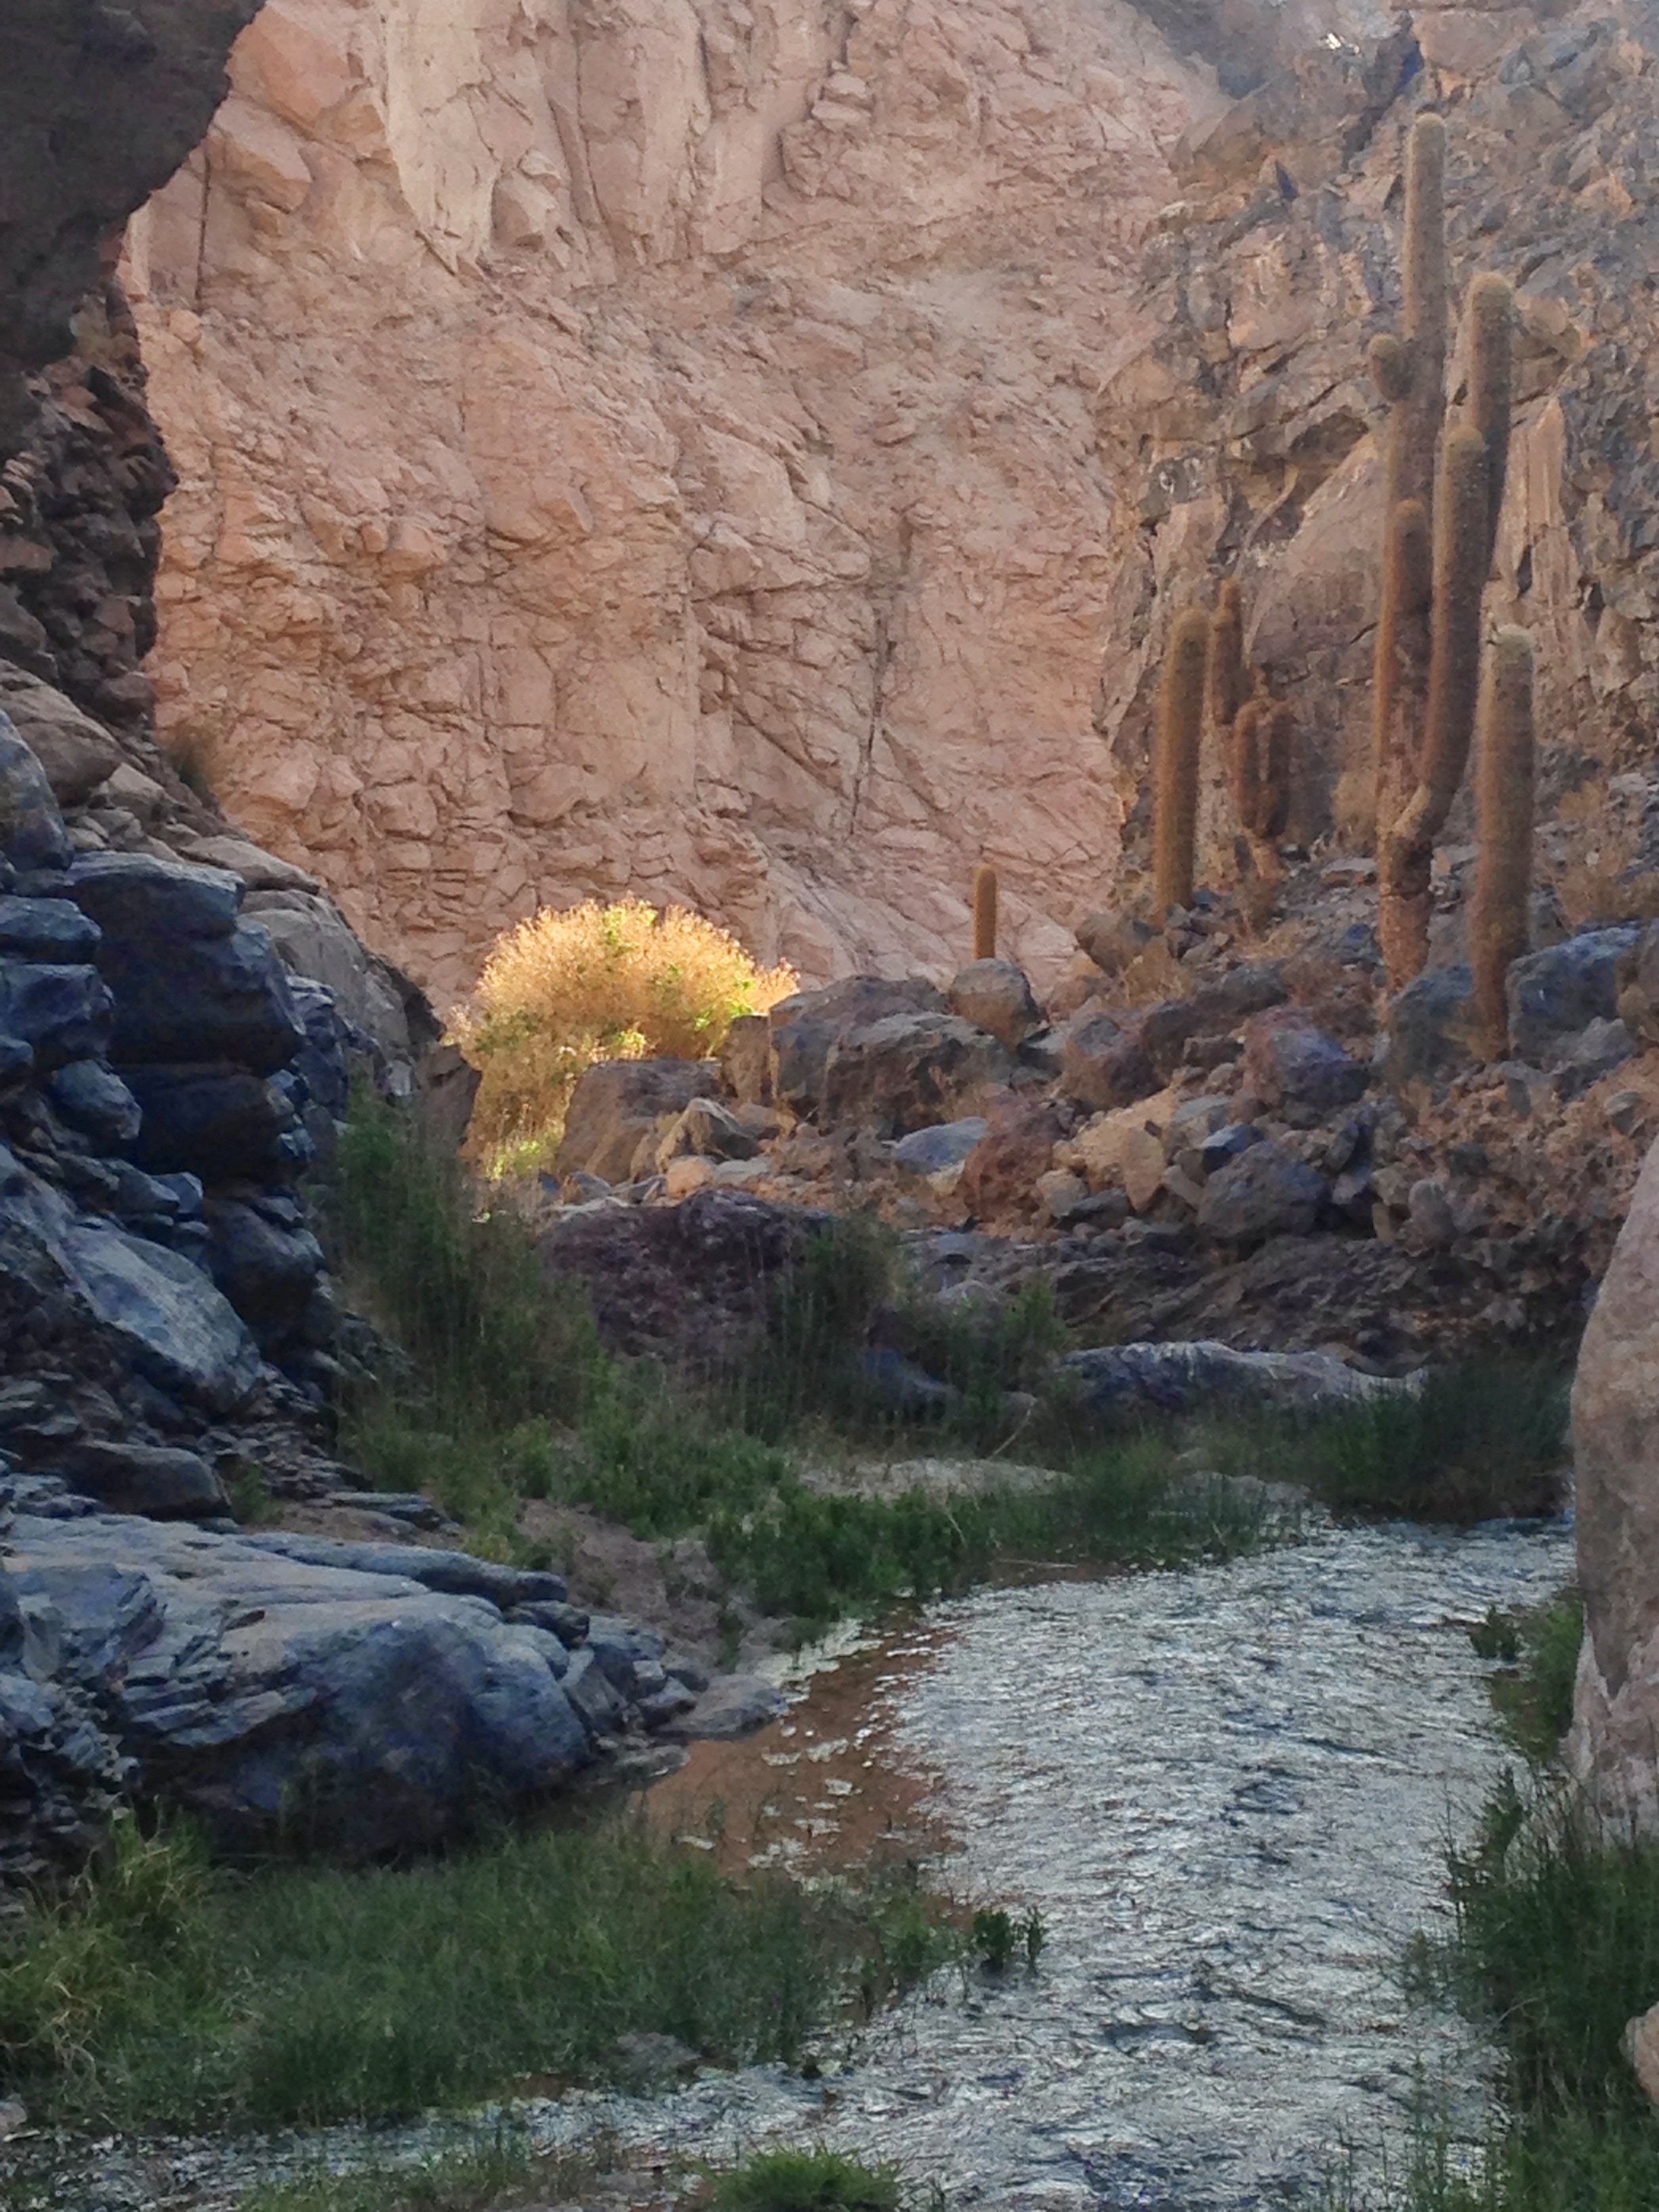 Huge cacti grow among the rocks of <em>Guatin</em> canyon.